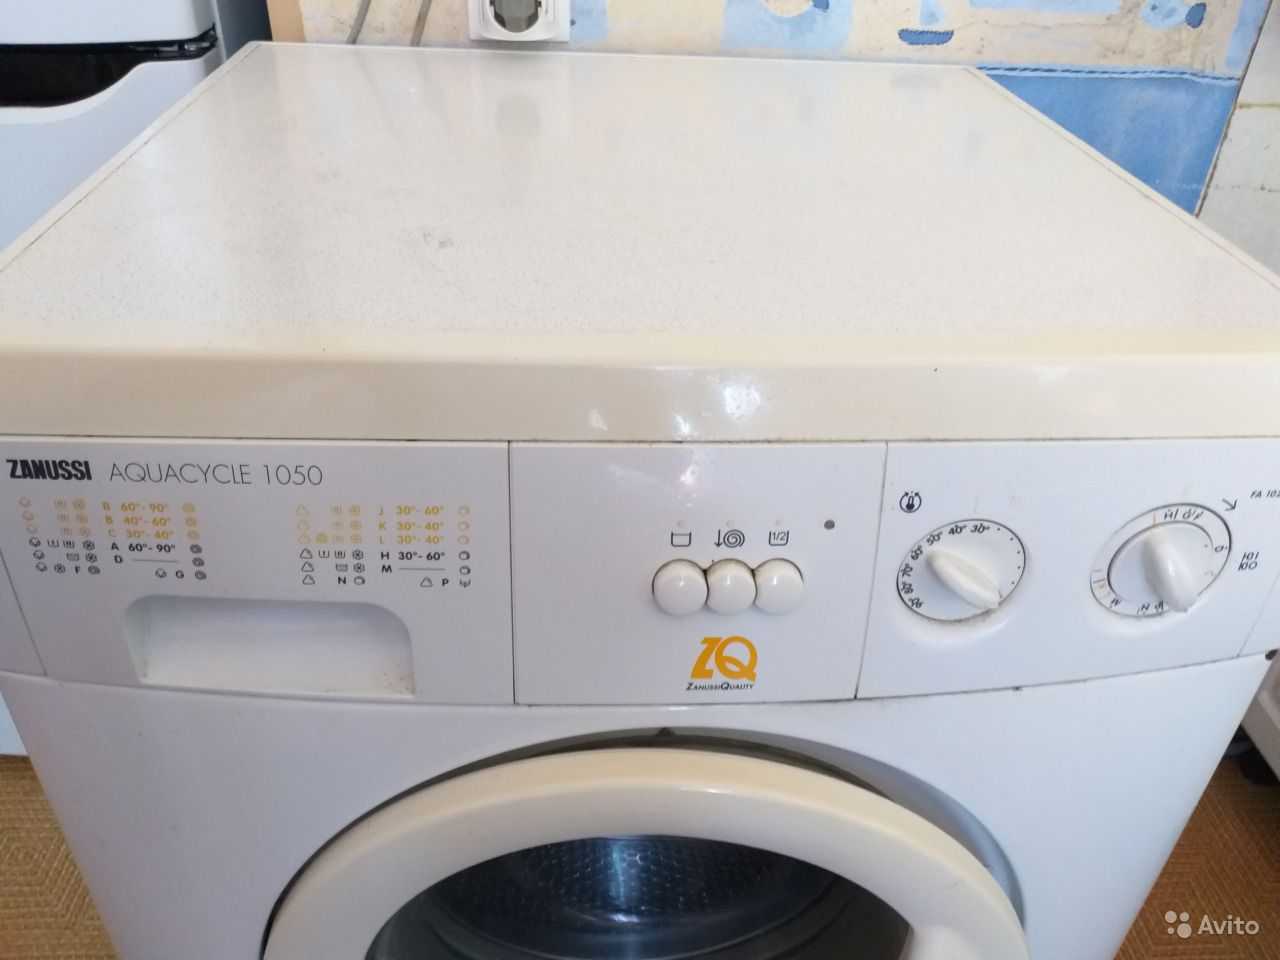 Как стирать в стиральной машине занусси aquacycle